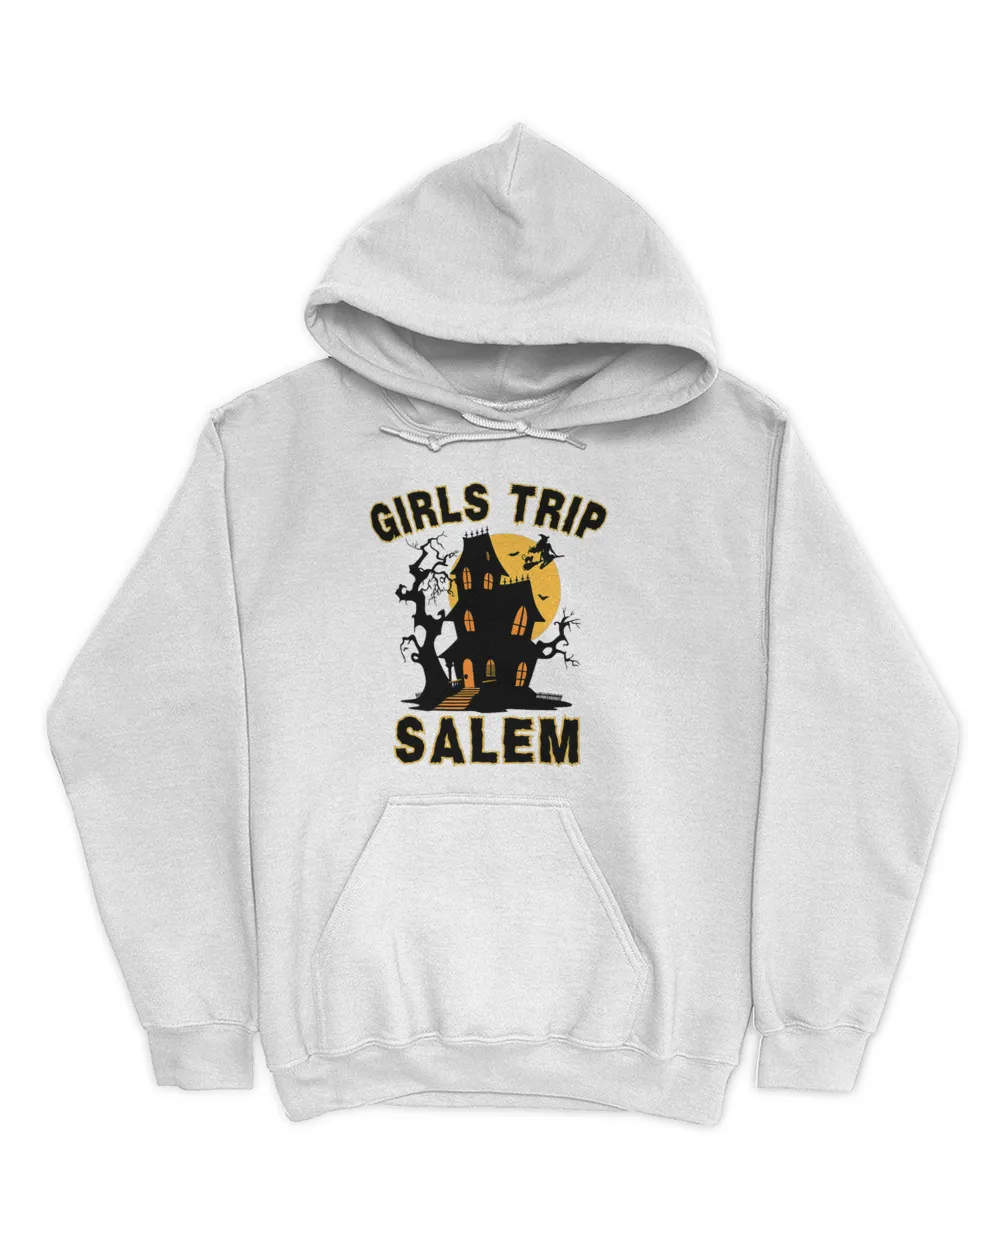 Girls Trip Salem Retro Salem 1692 Witch Funny Halloween